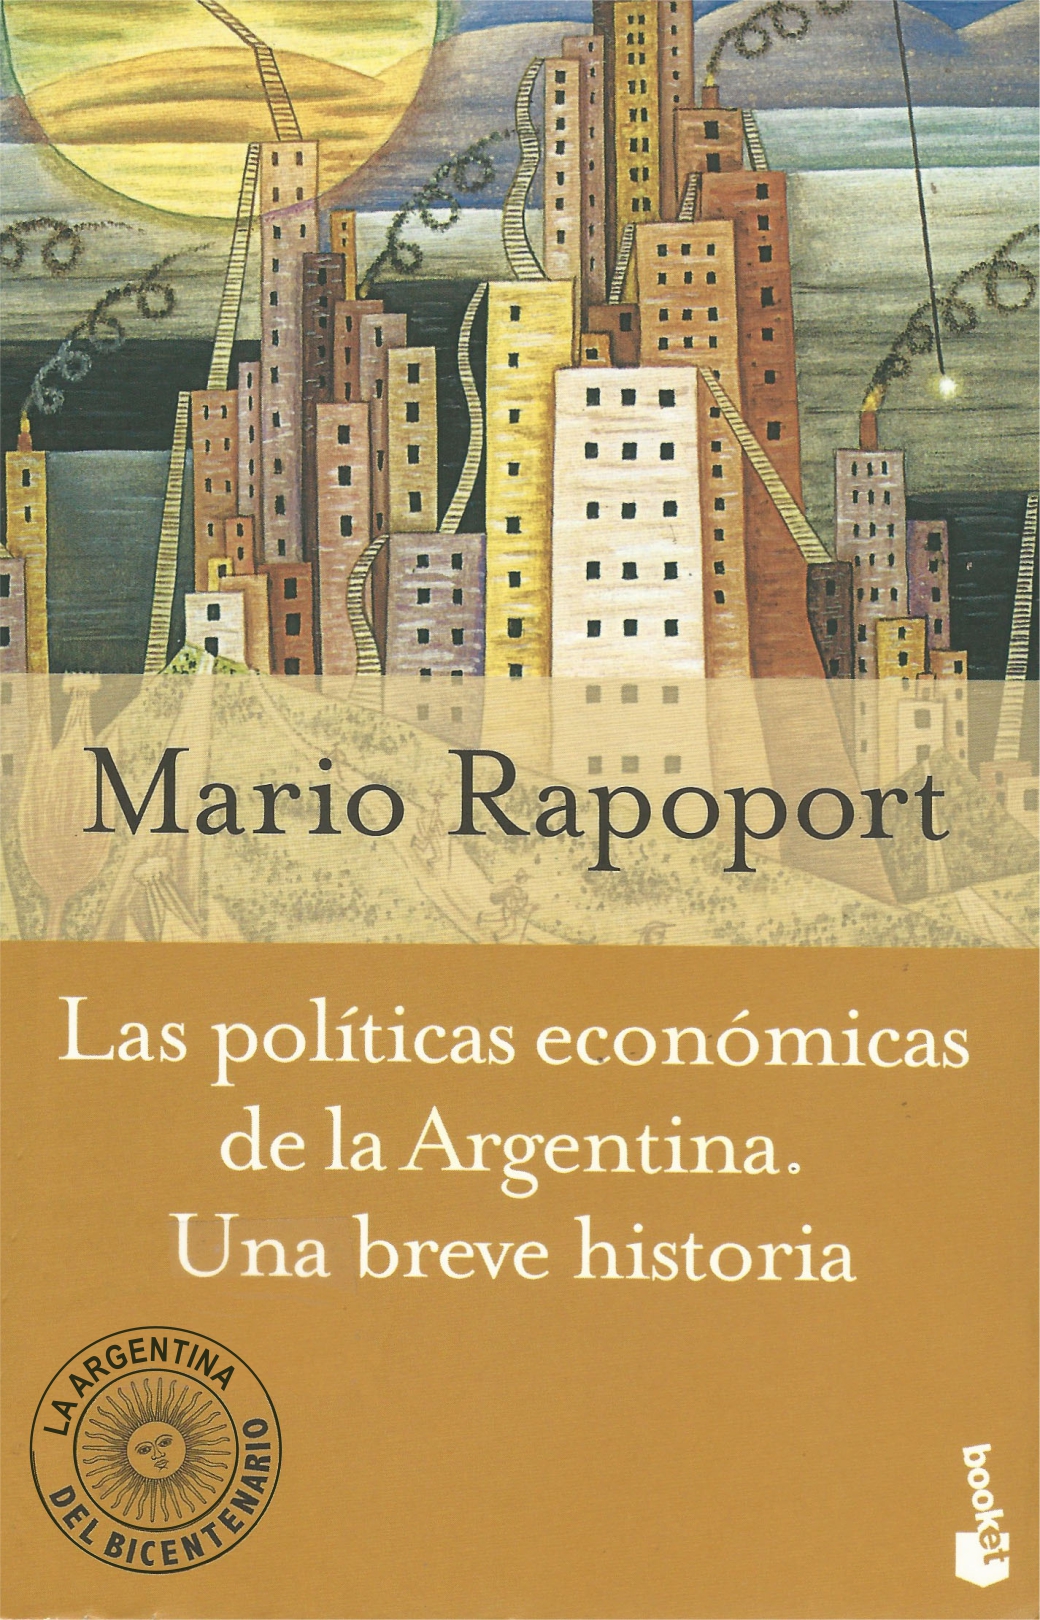 Las políticas económicas de la Argentina: una breve historia